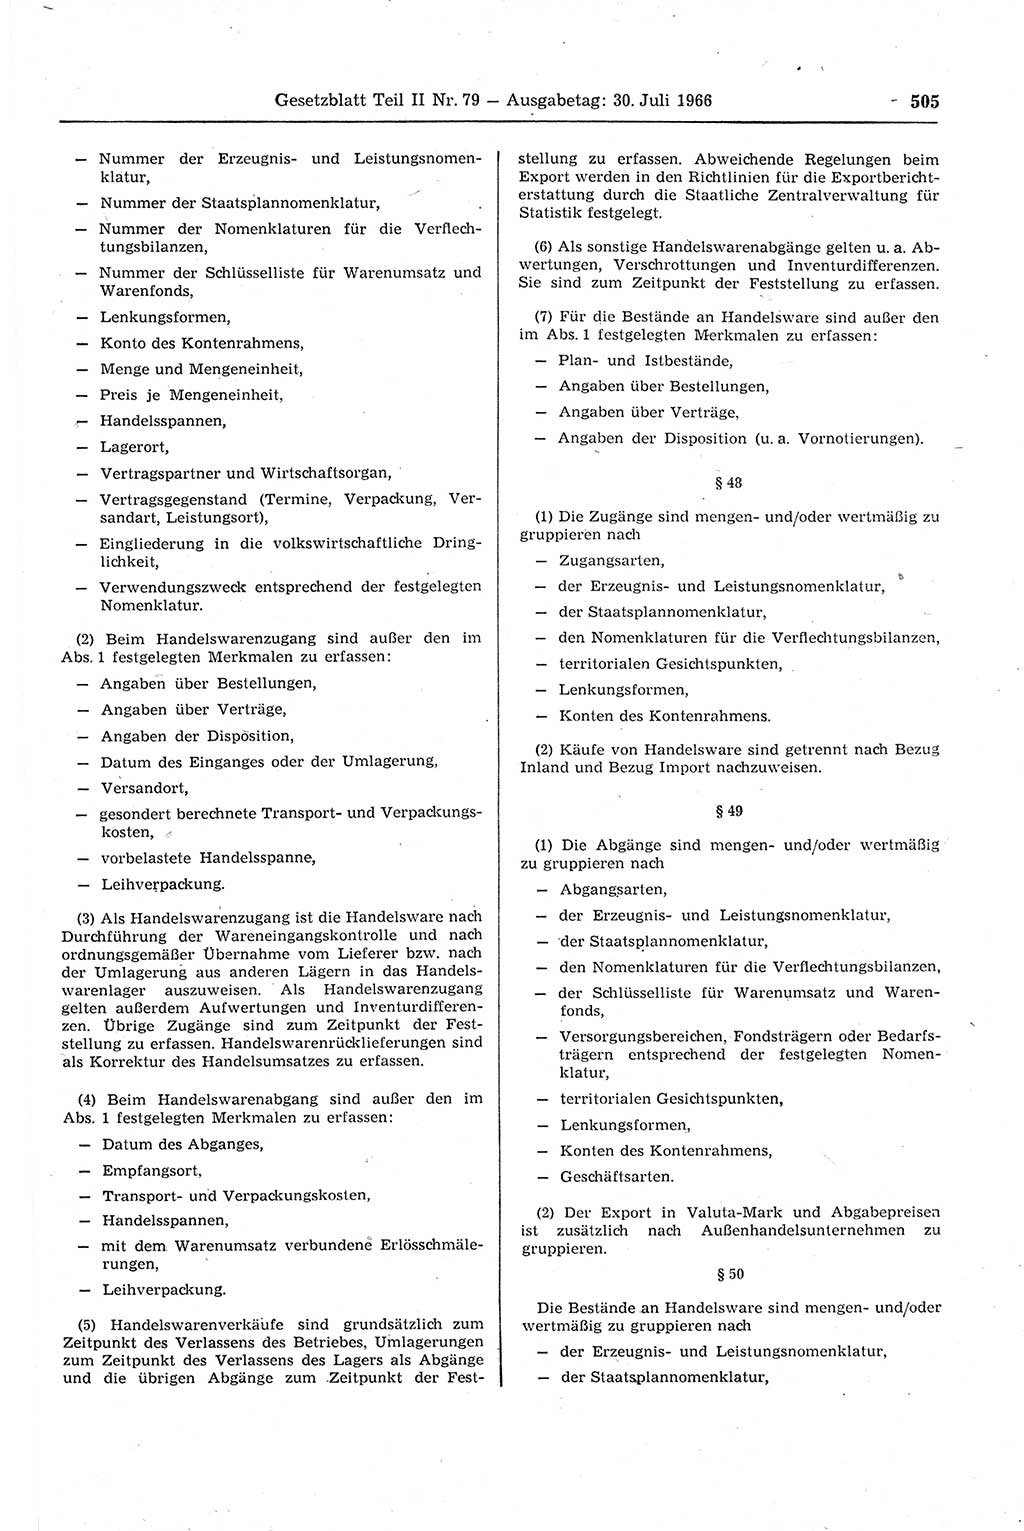 Gesetzblatt (GBl.) der Deutschen Demokratischen Republik (DDR) Teil ⅠⅠ 1966, Seite 505 (GBl. DDR ⅠⅠ 1966, S. 505)